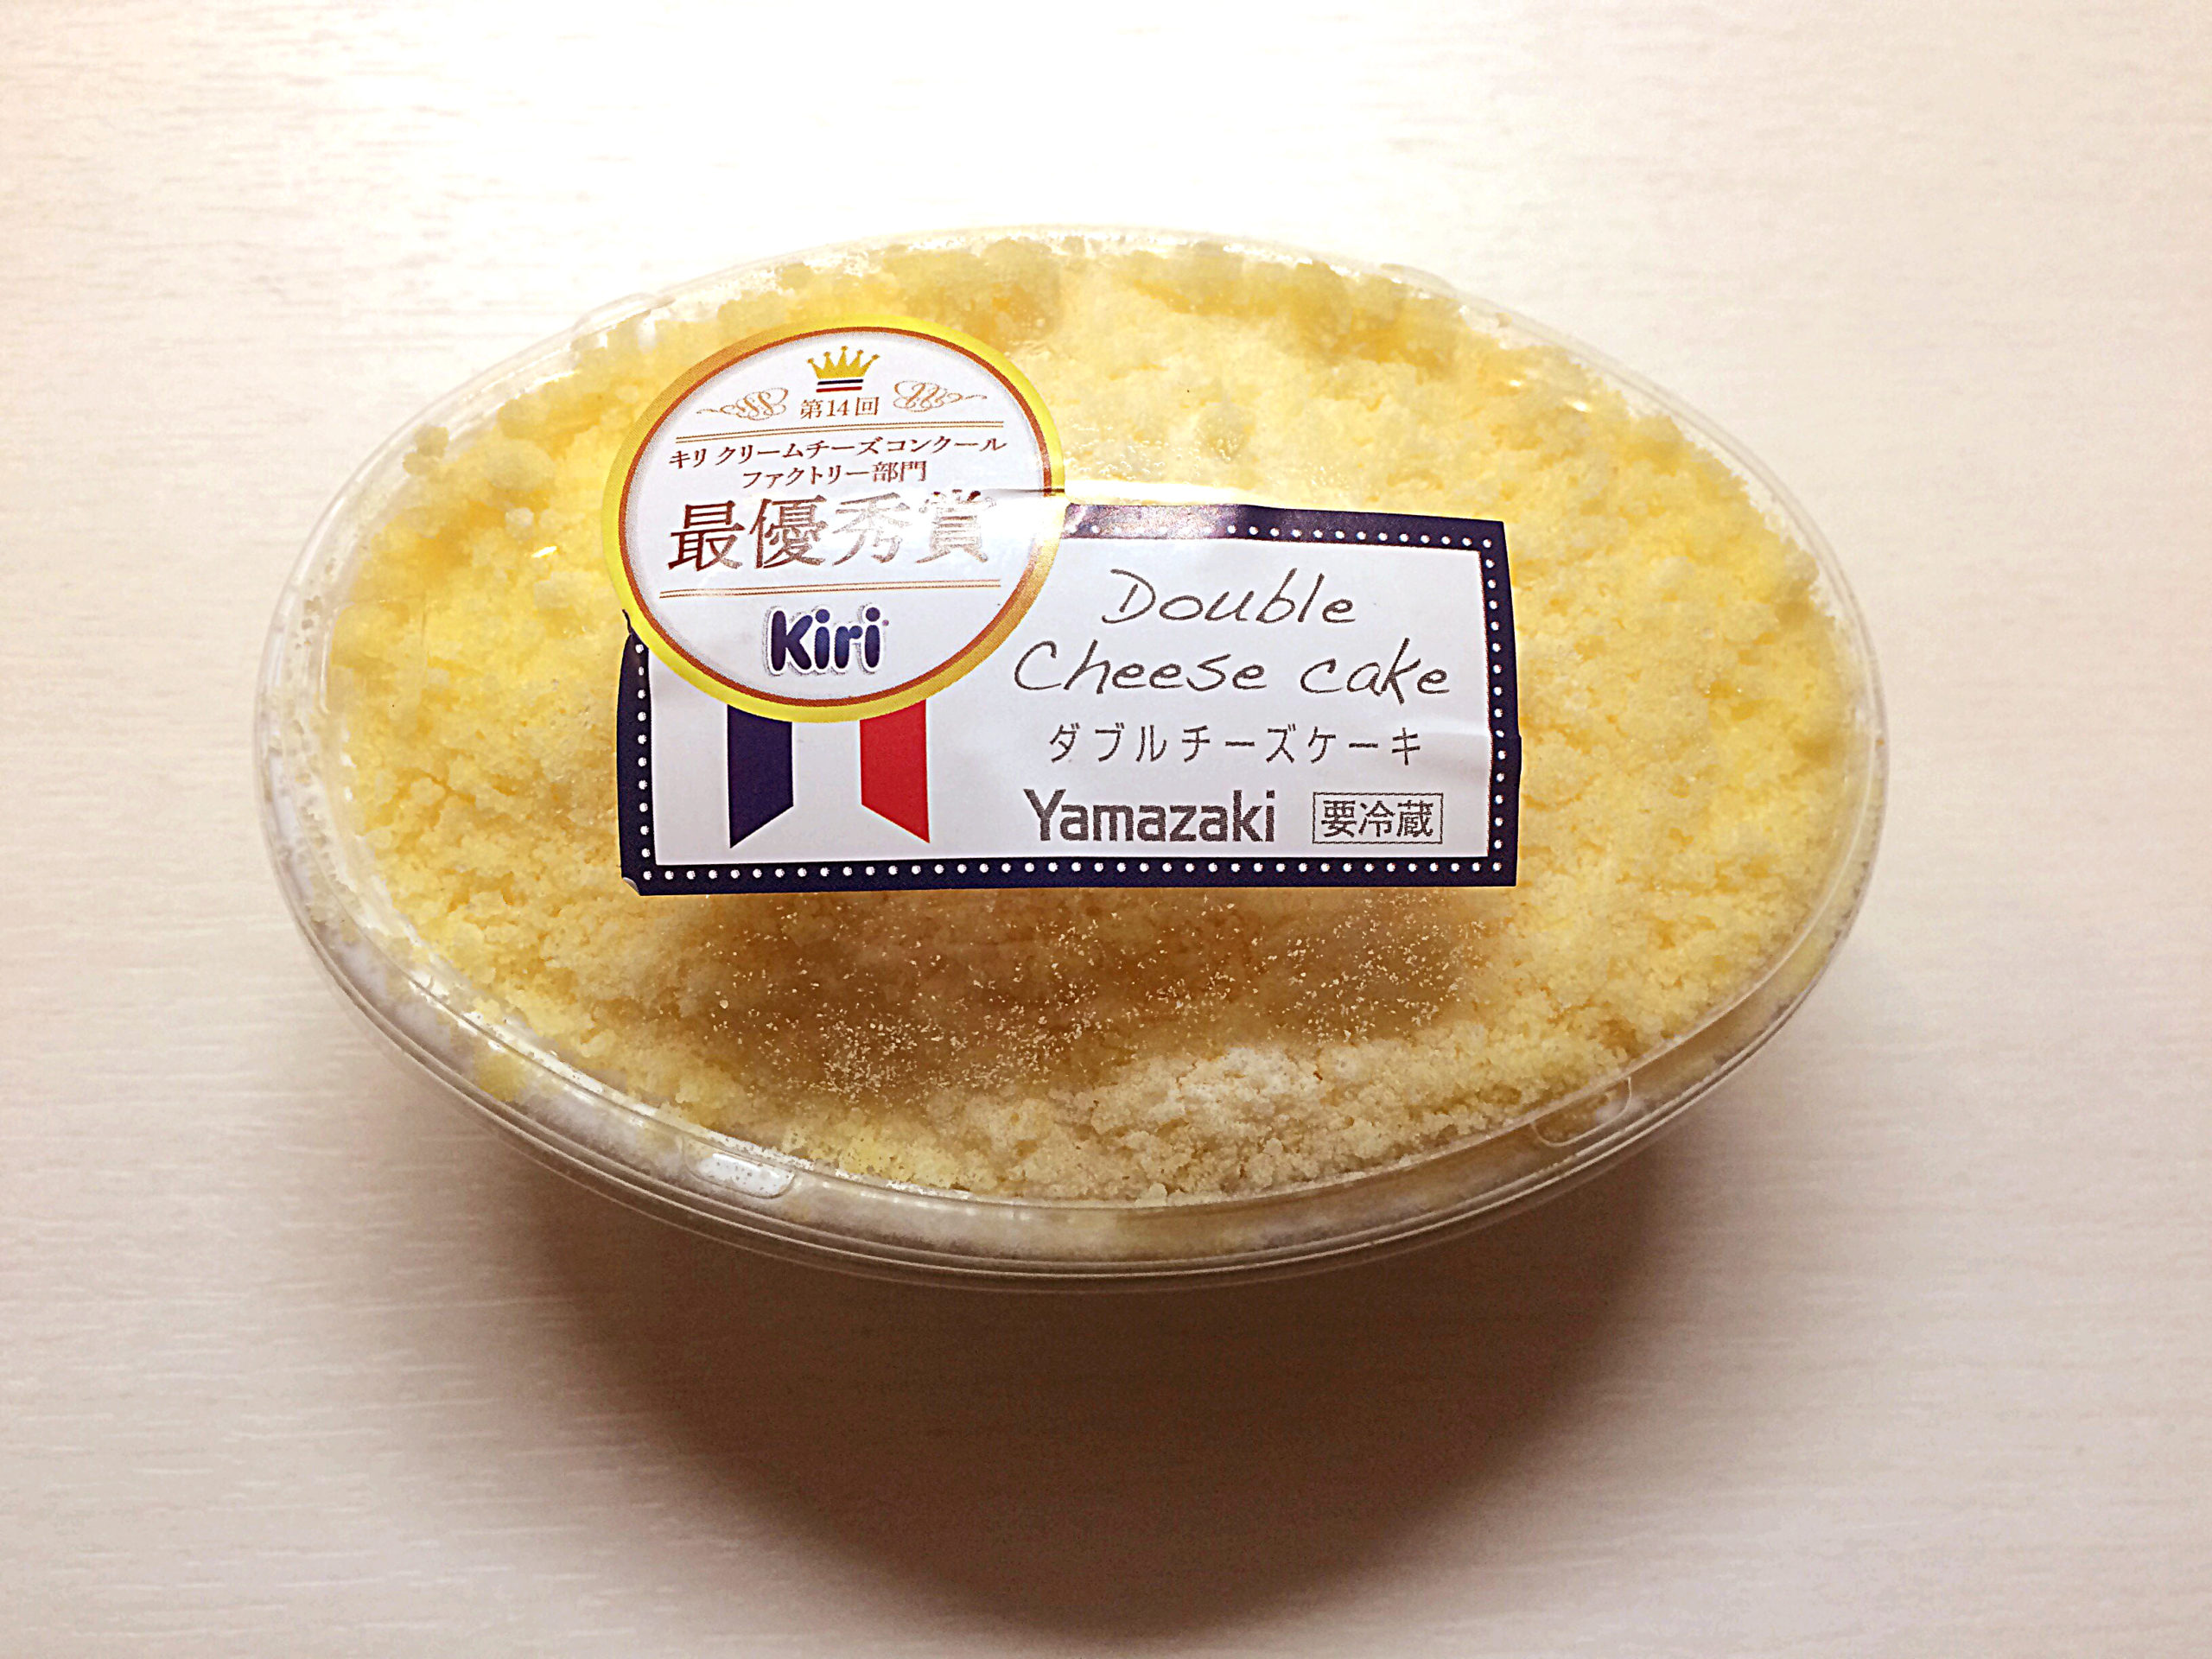 山崎製パン ダブルチーズケーキ Nyainの新商品